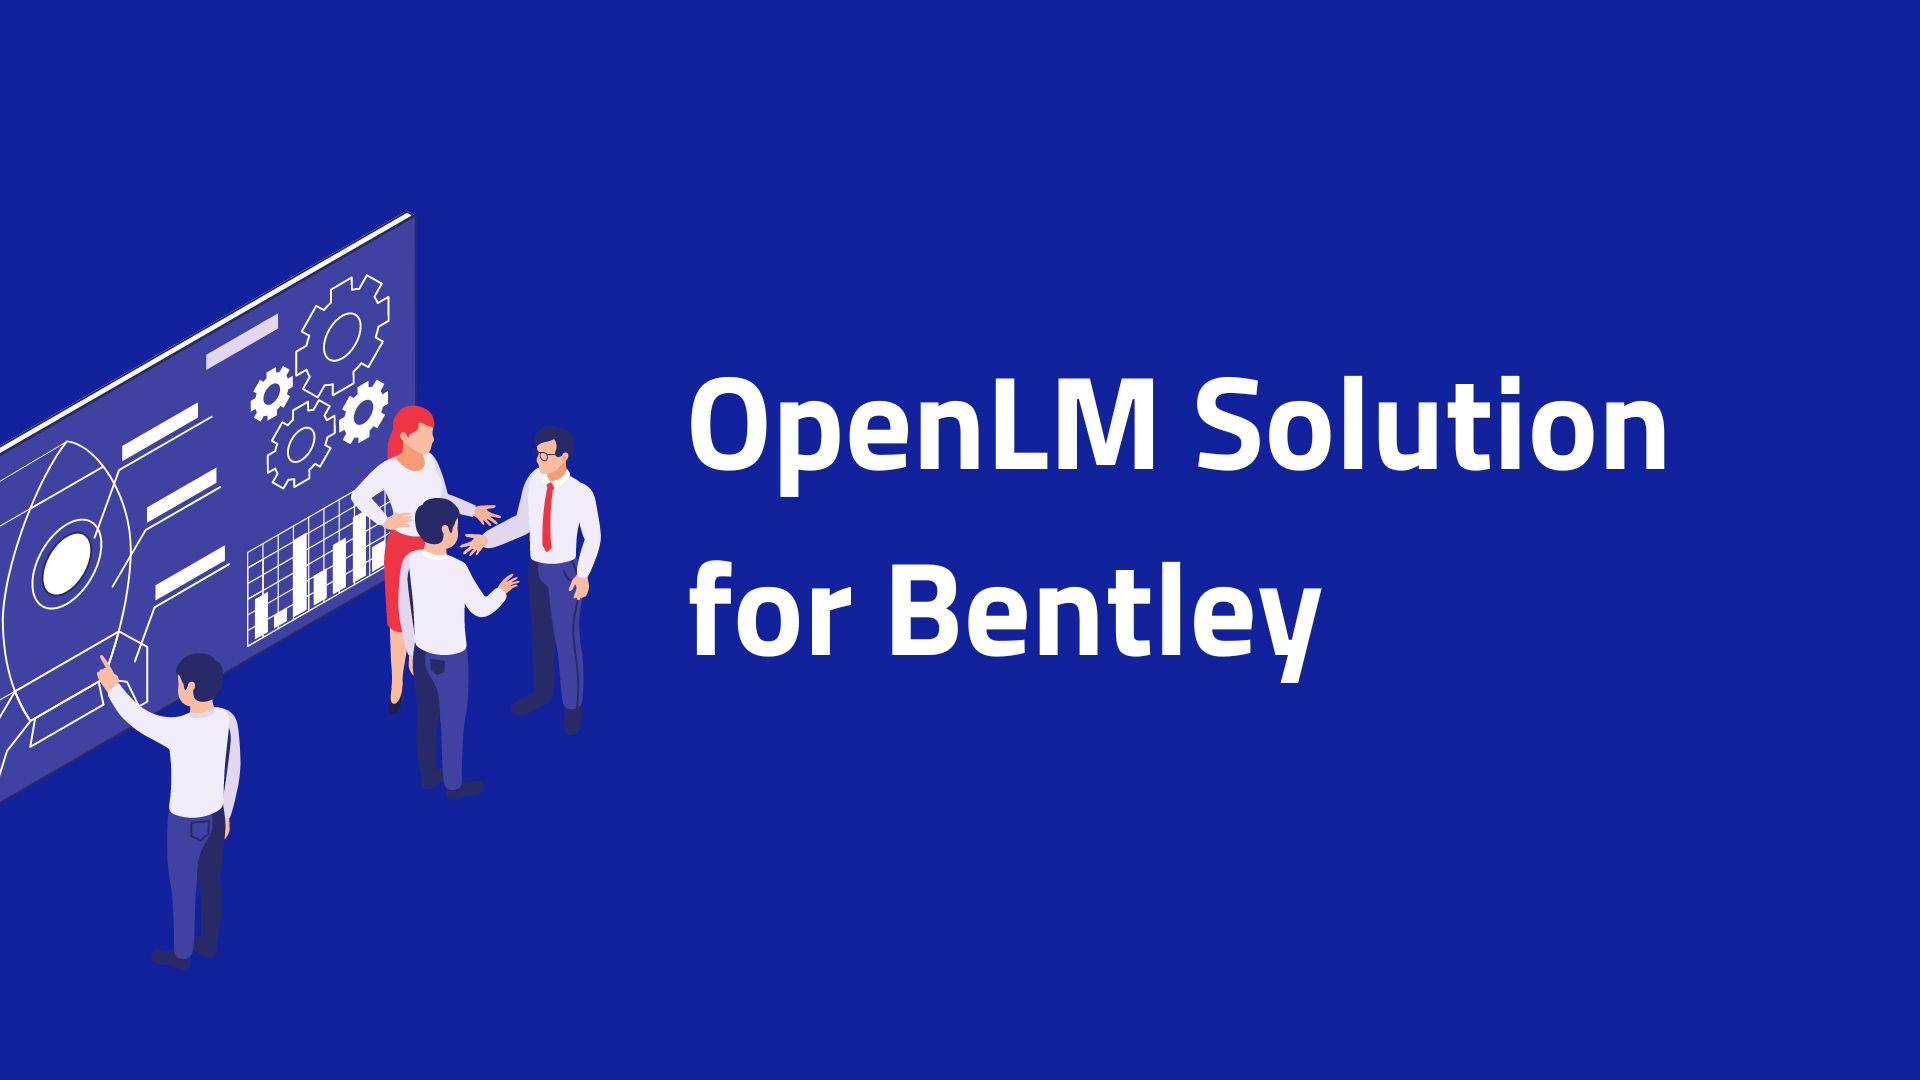 OpenLM Solutions for Bentley